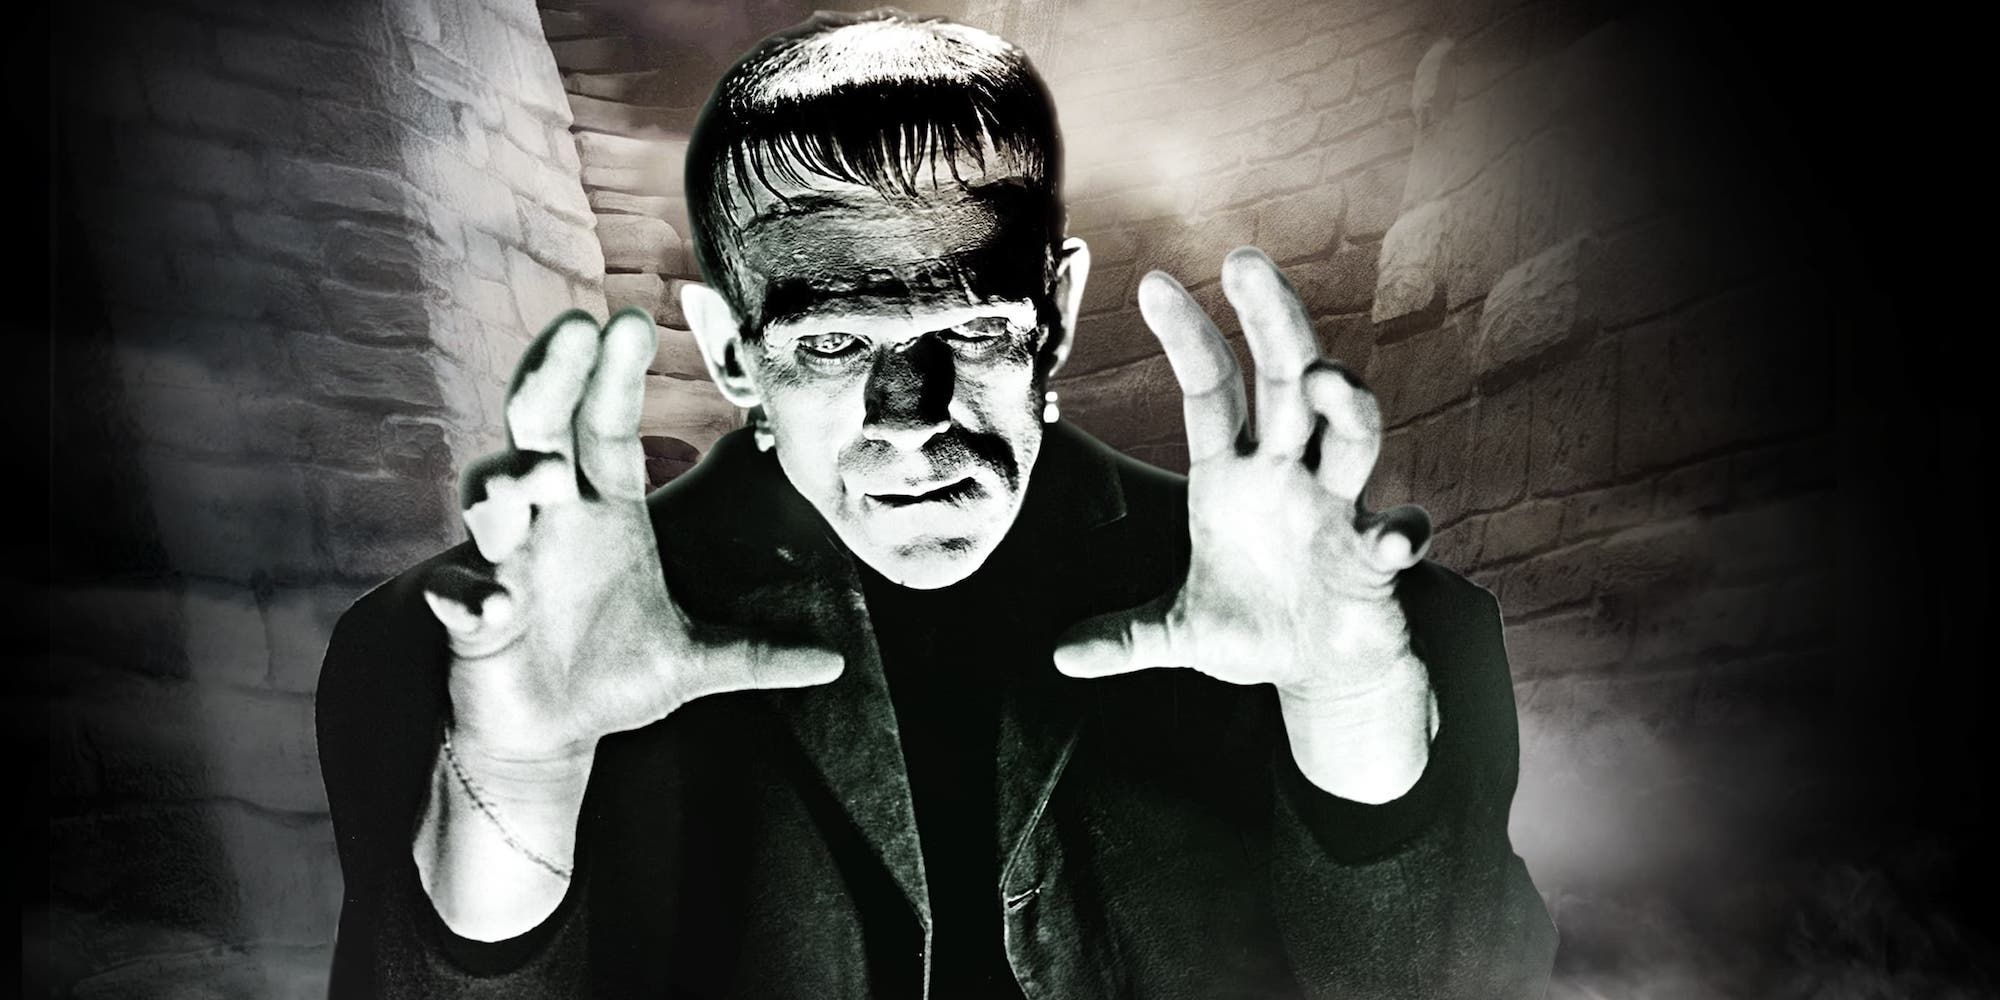 Frankenstein de Guillermo del Toro: la nueva imagen del set aparentemente muestra una escena novedosa importante